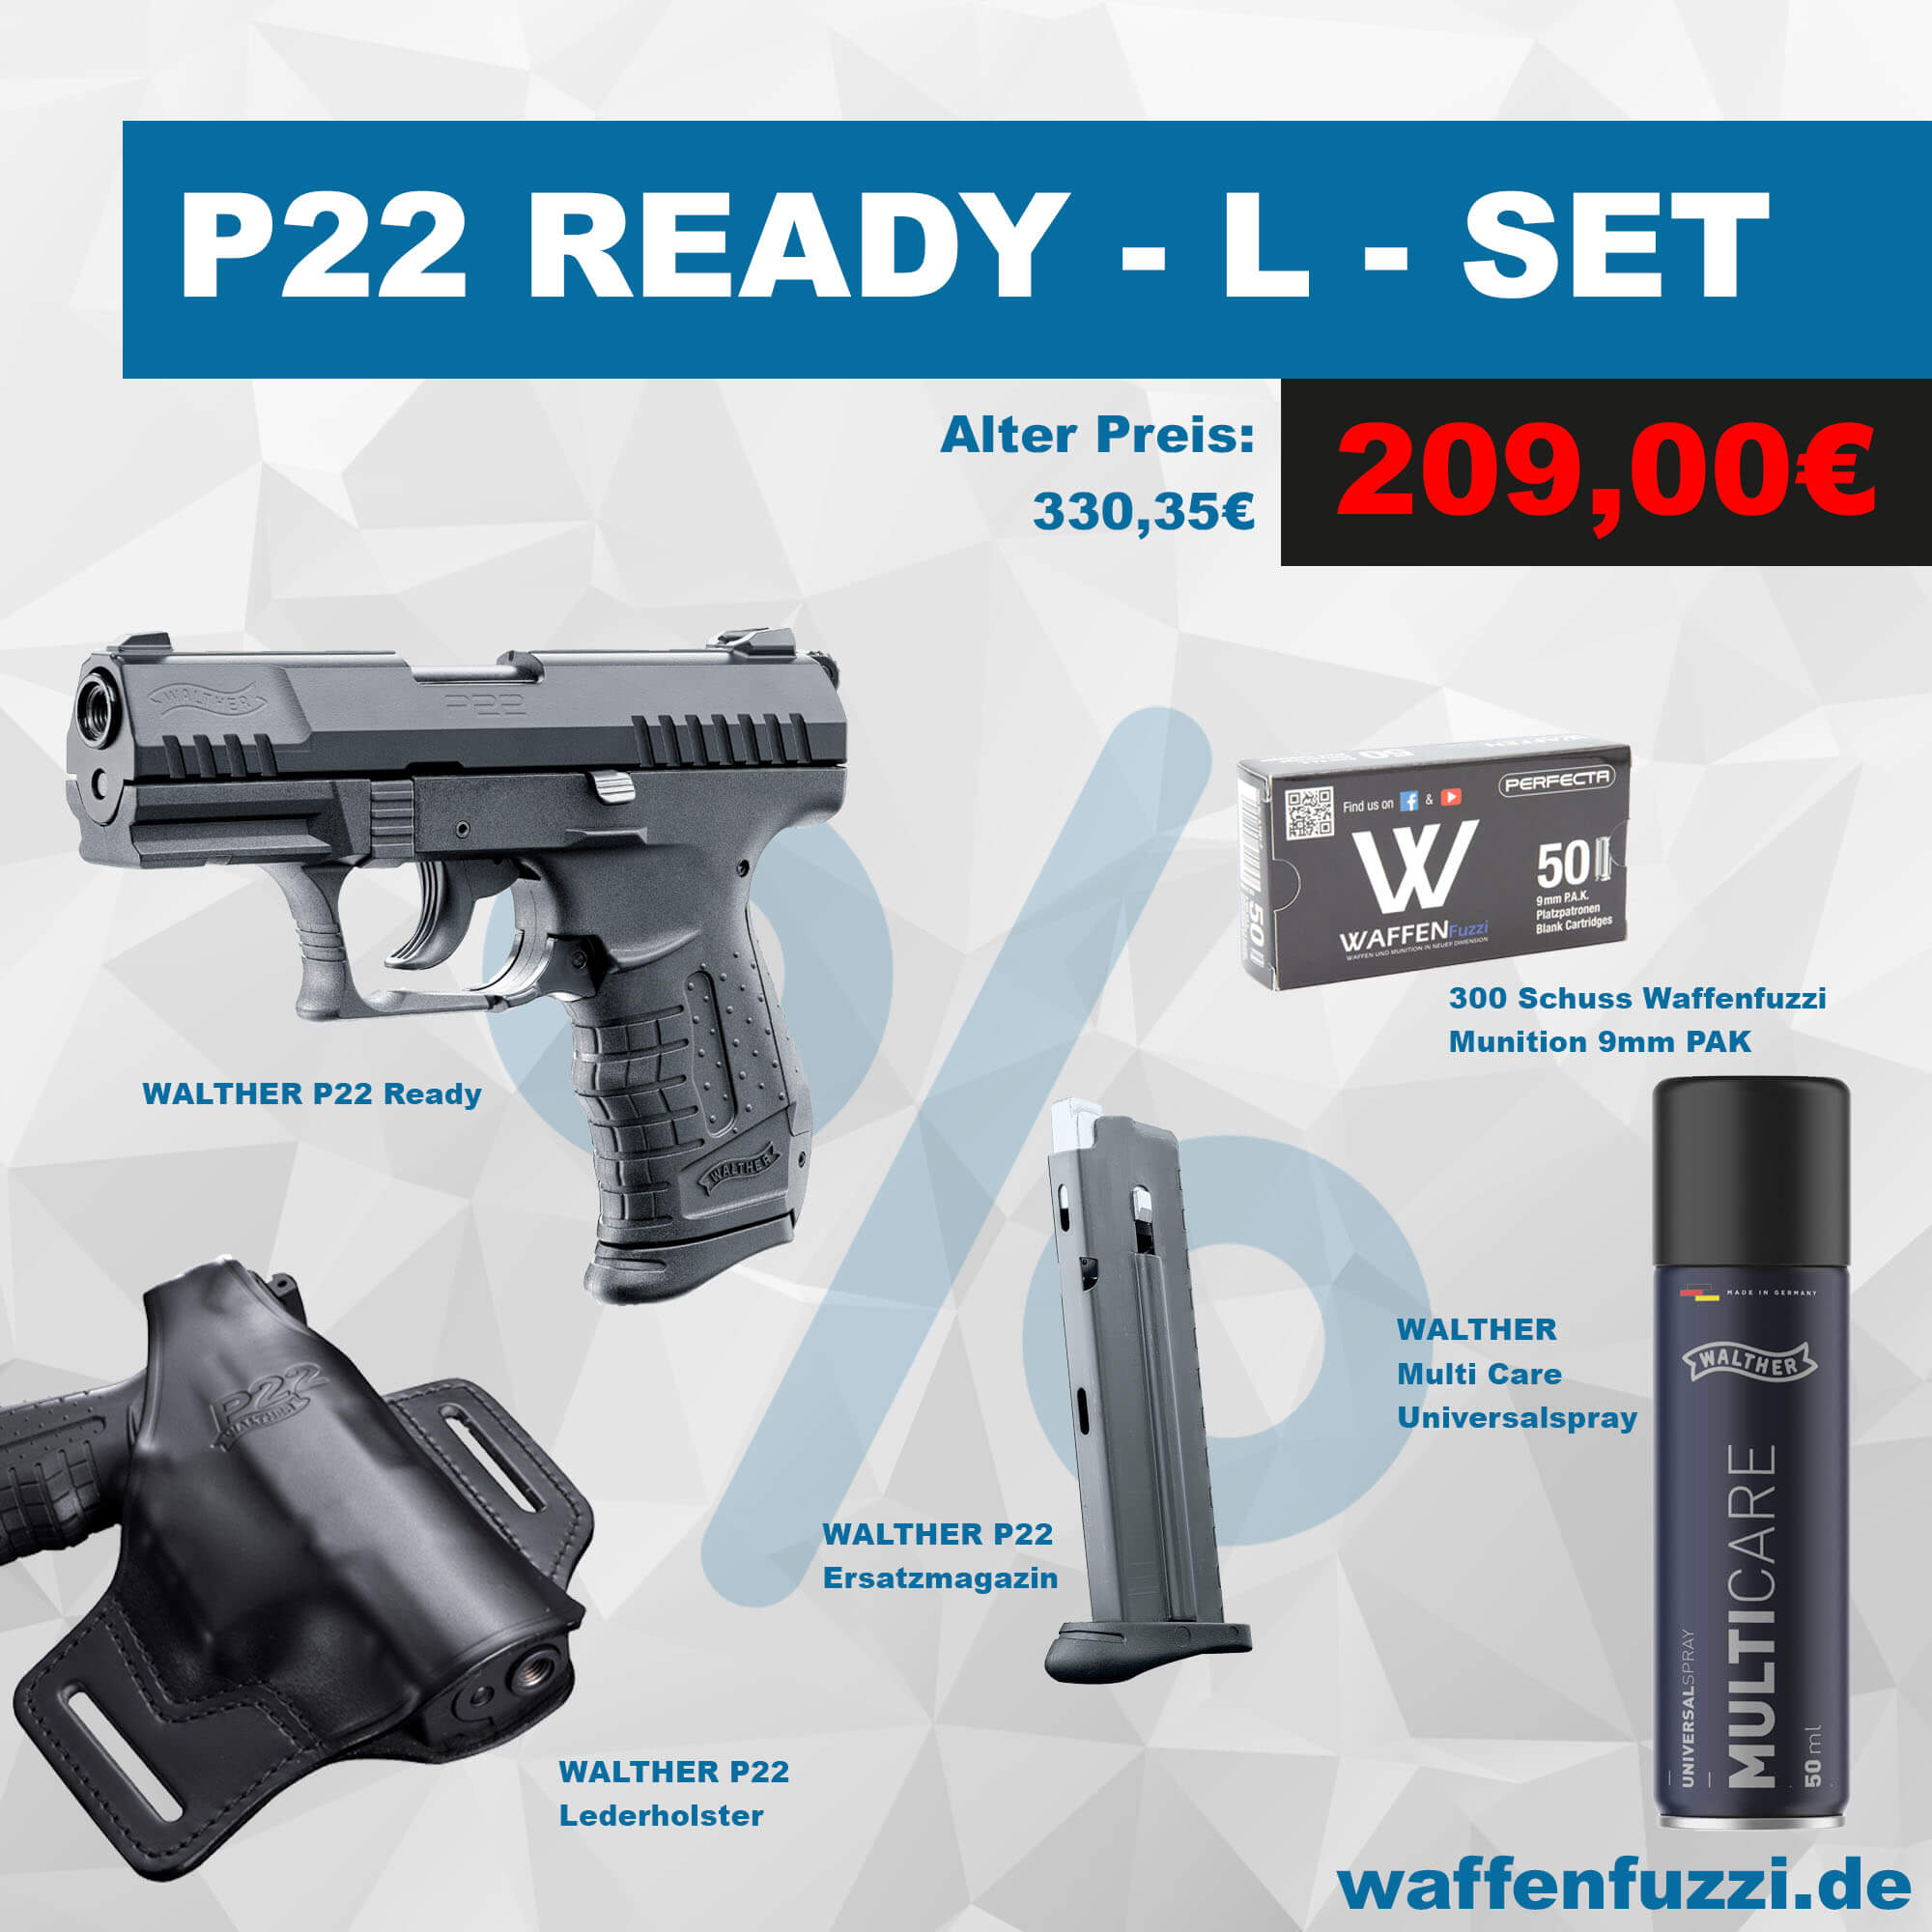 Waffenfuzzi Walther P22 Ready Sparset für unschlagbare 209 Euro